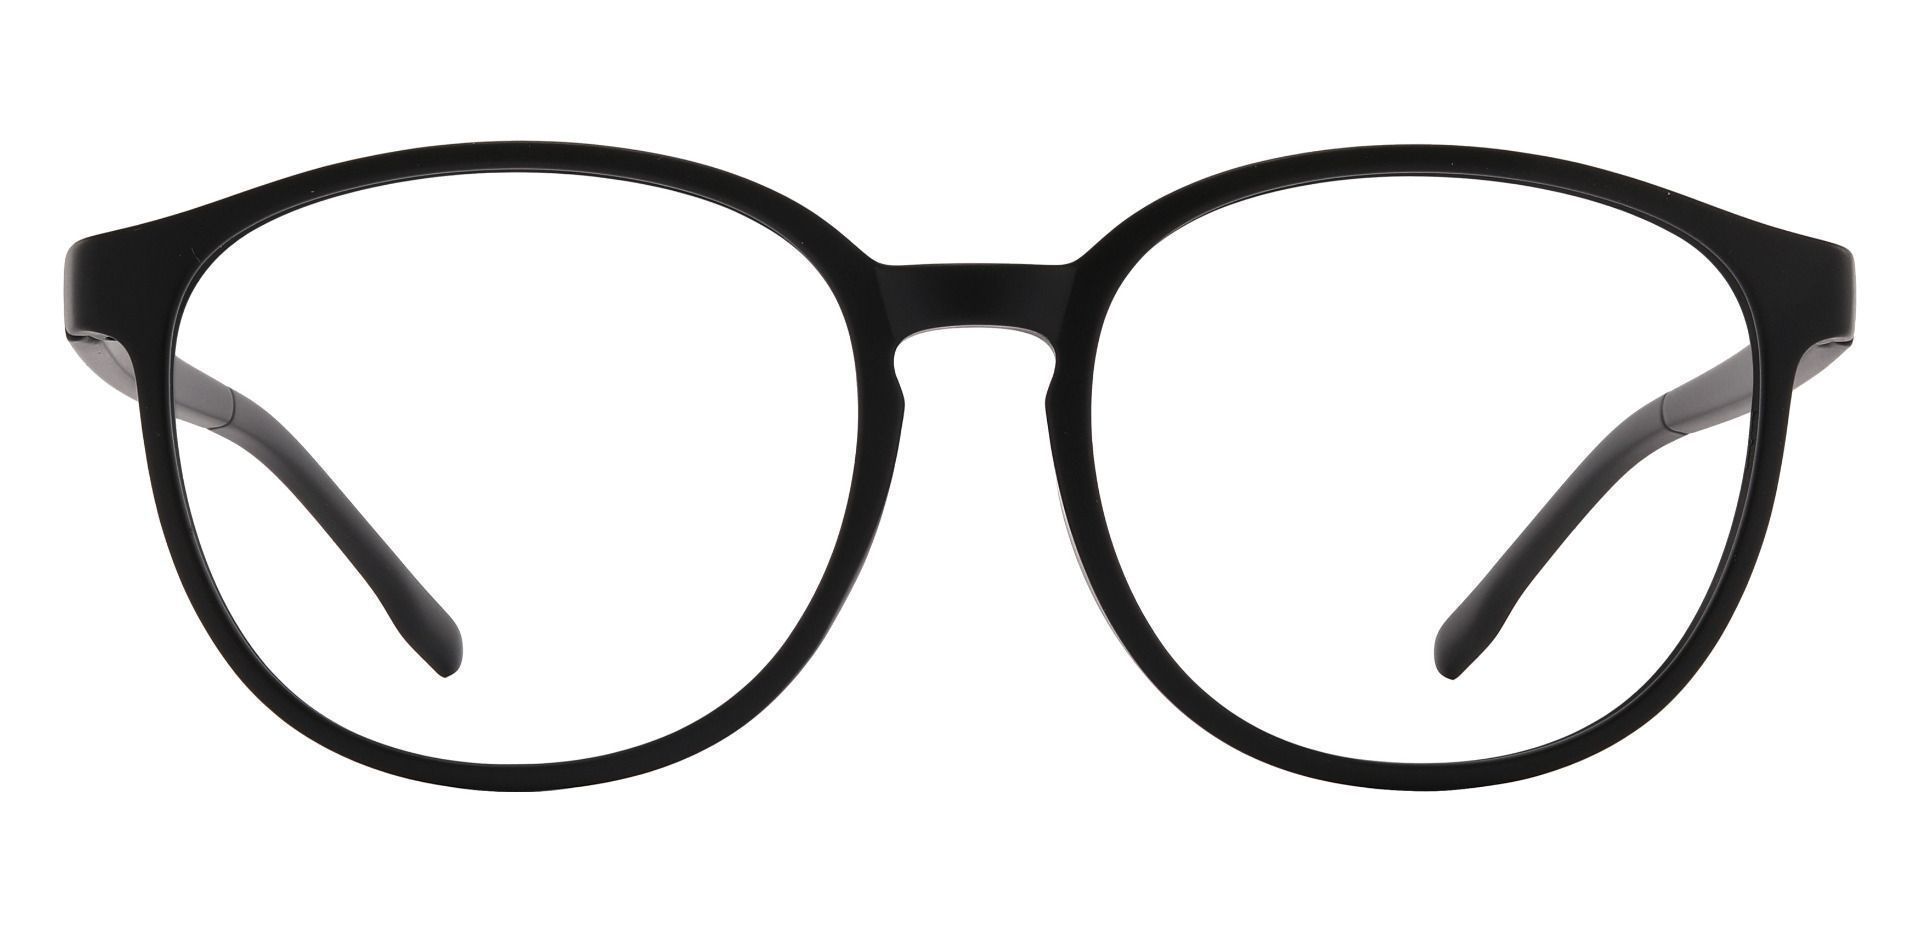 Molasses Oval Progressive Glasses - Black